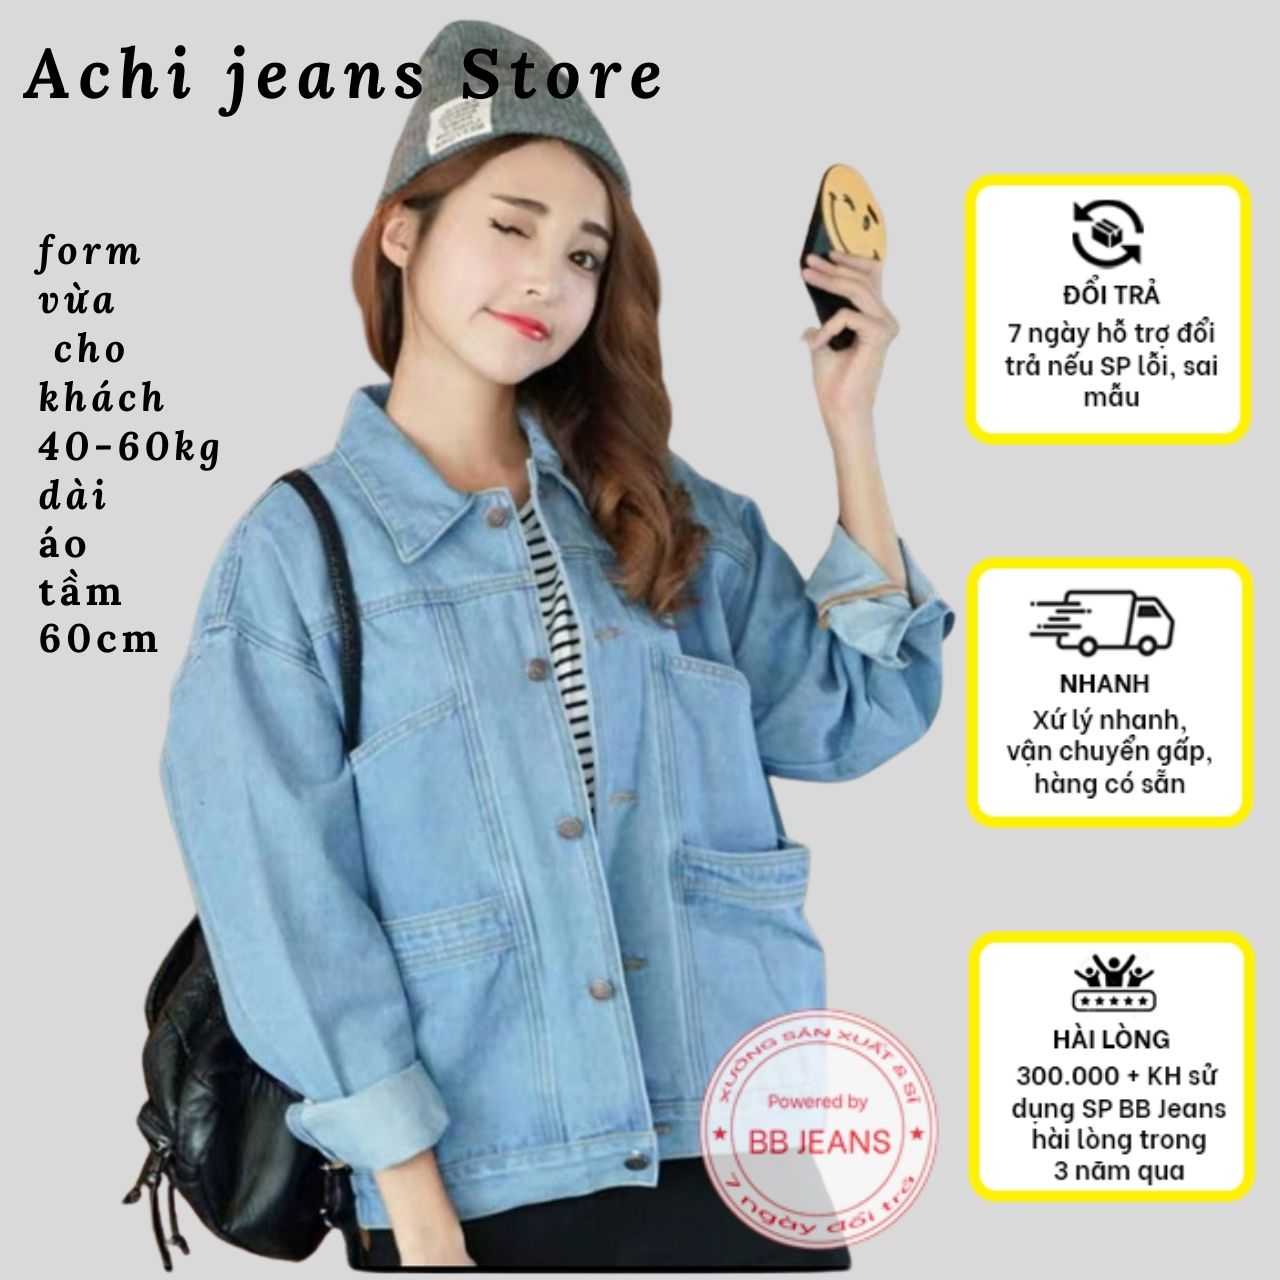 Áo khoác jean nữ túi lớn khổng lồ chứa điện thoại chống nắng tuyệt đỉnh form 40-60kg dài áo 60cm giá tốt tại Achi Jeans Store